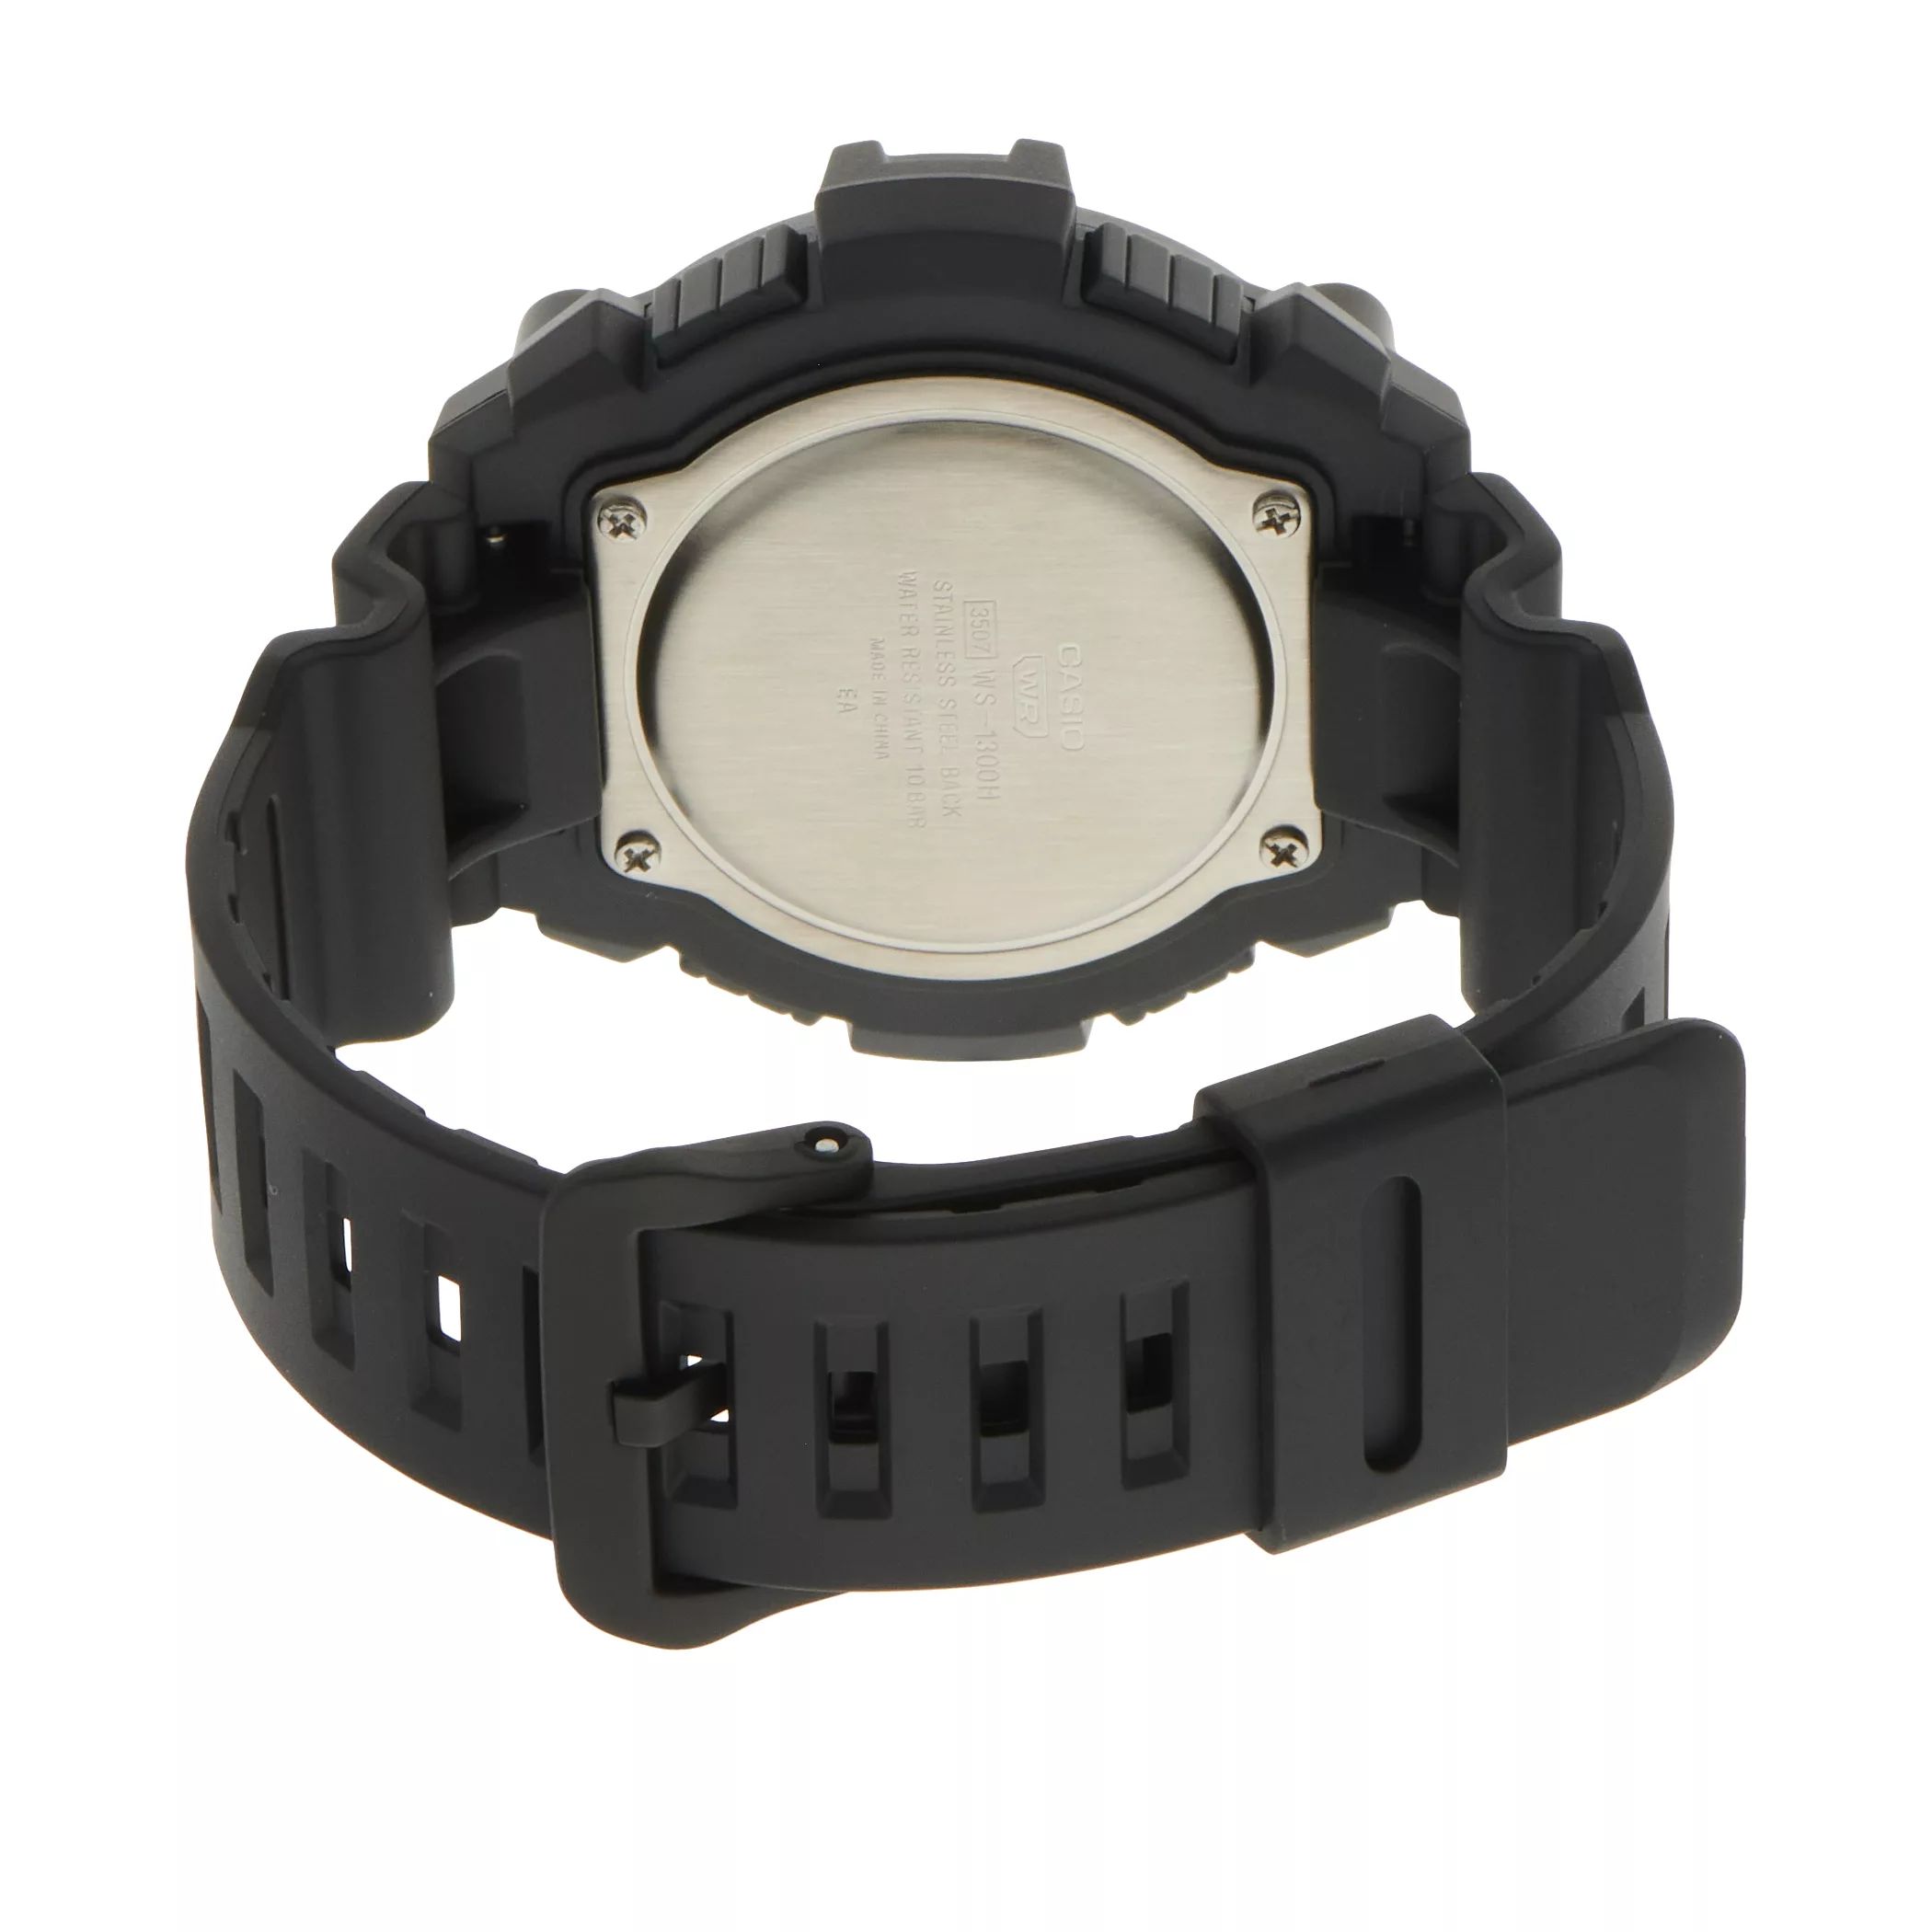 Мужские цифровые часы-хронограф - WS1300H-1AV Casio цена и фото